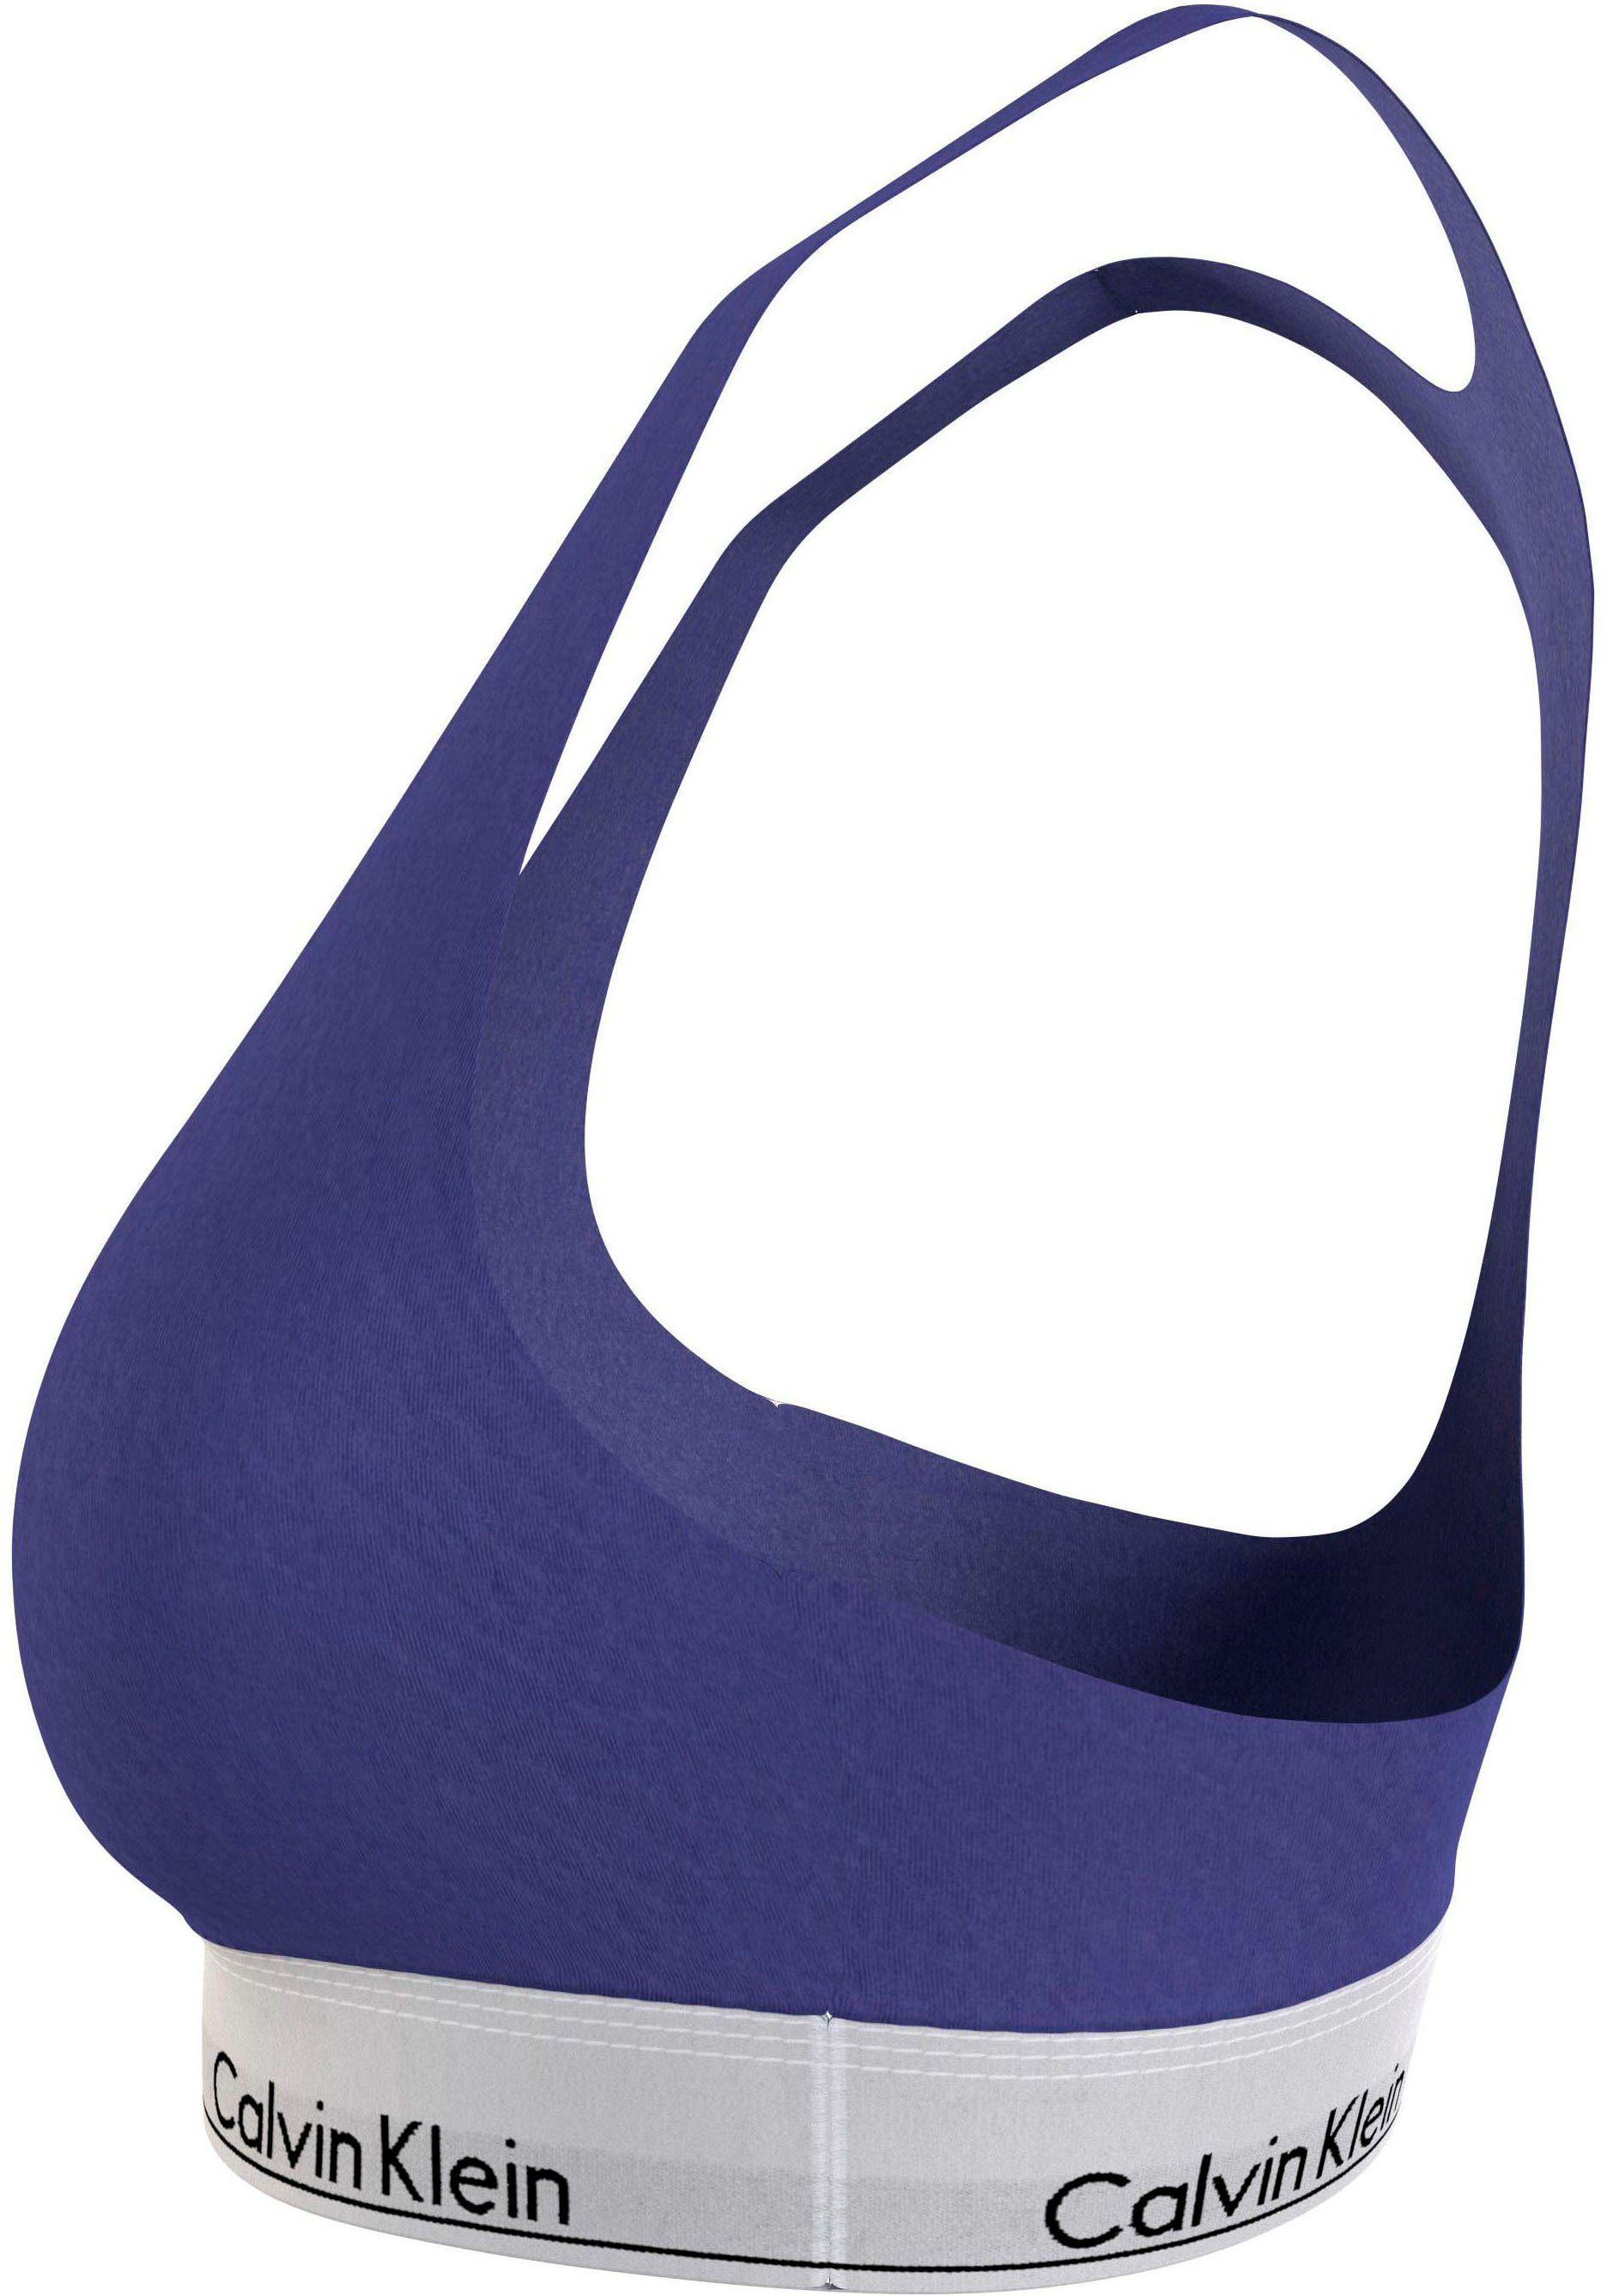 UNLINED (FF) Klein blau Calvin BRALETTE in Bralette-BH Größen Underwear Plus Size